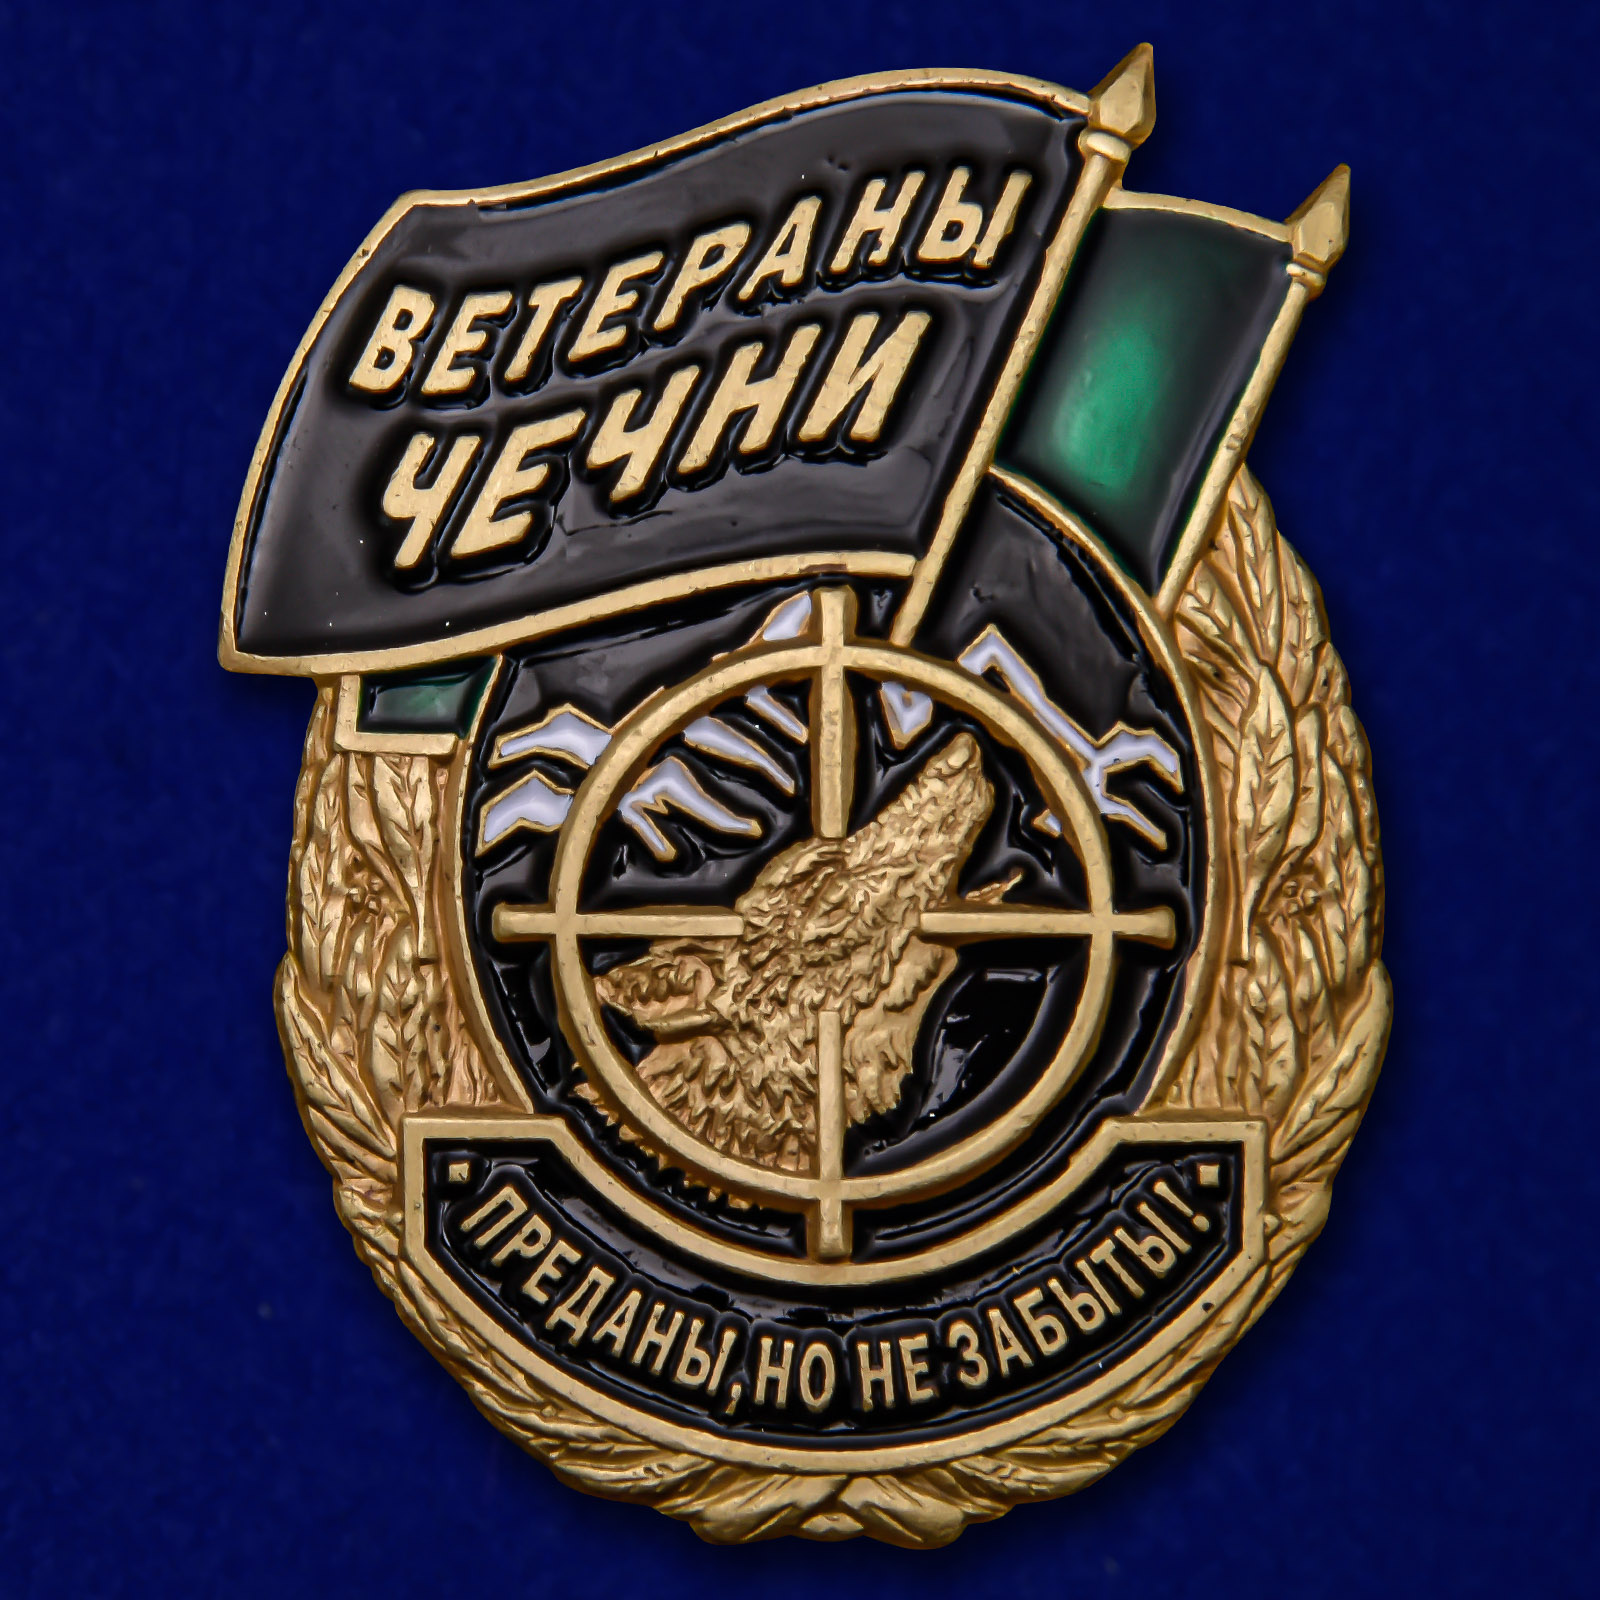 Купить знак Ветераны Чечни на подставке онлайн